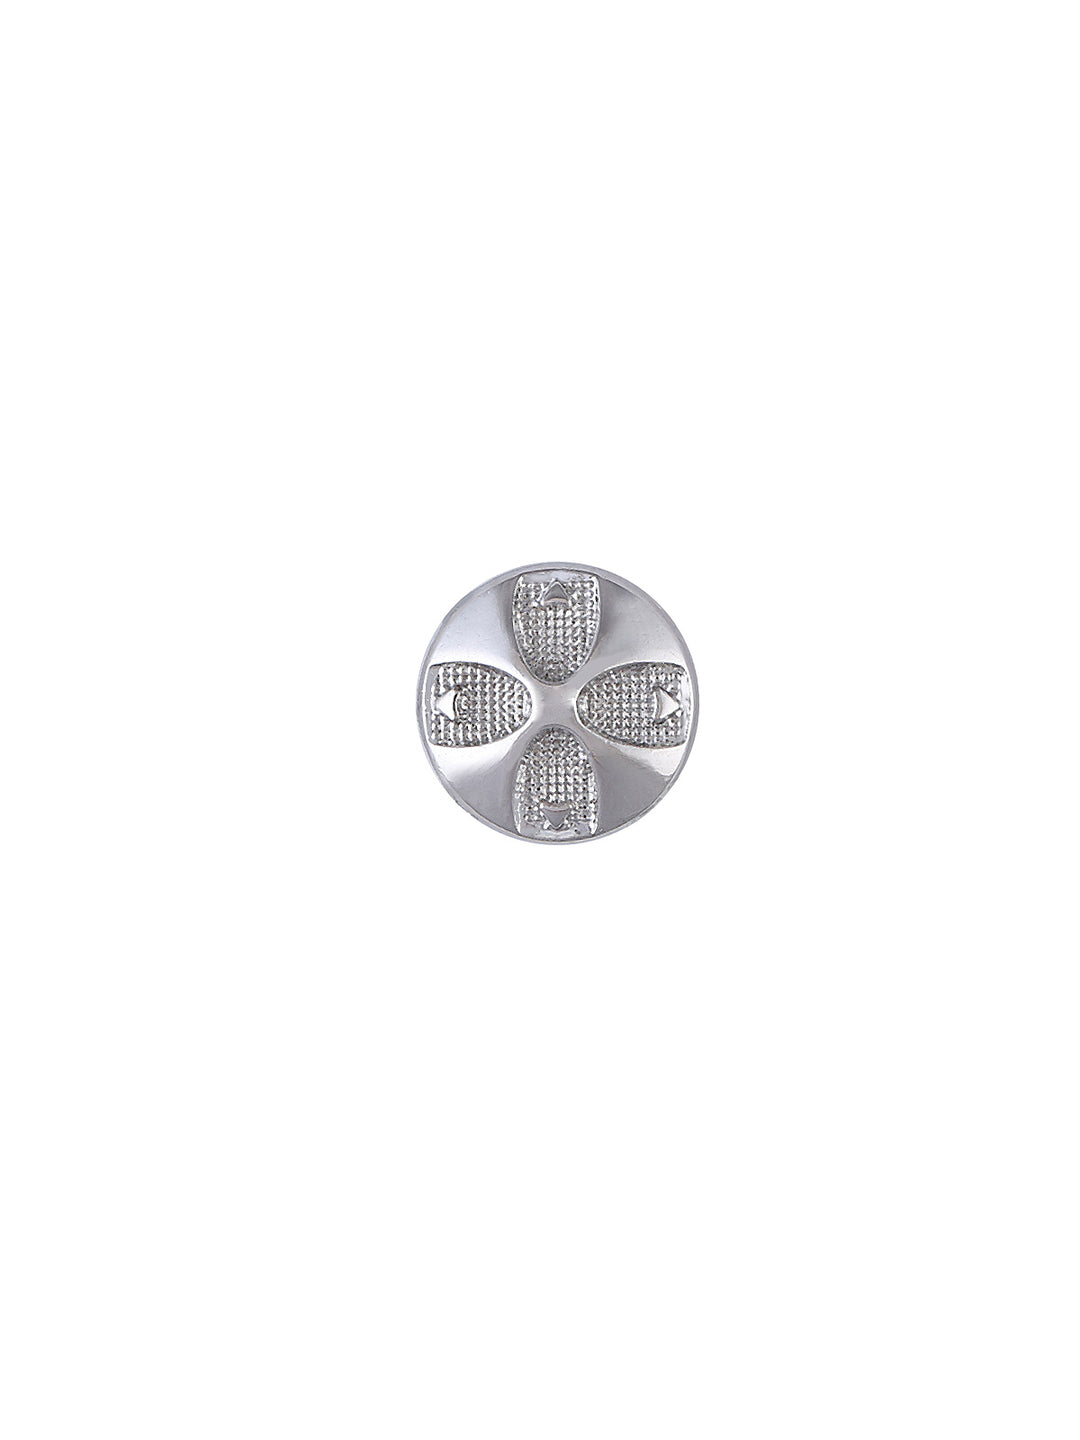 Fancy 10mm-16L Party Wear Shirt/Kurta Metal Button in Silver Color